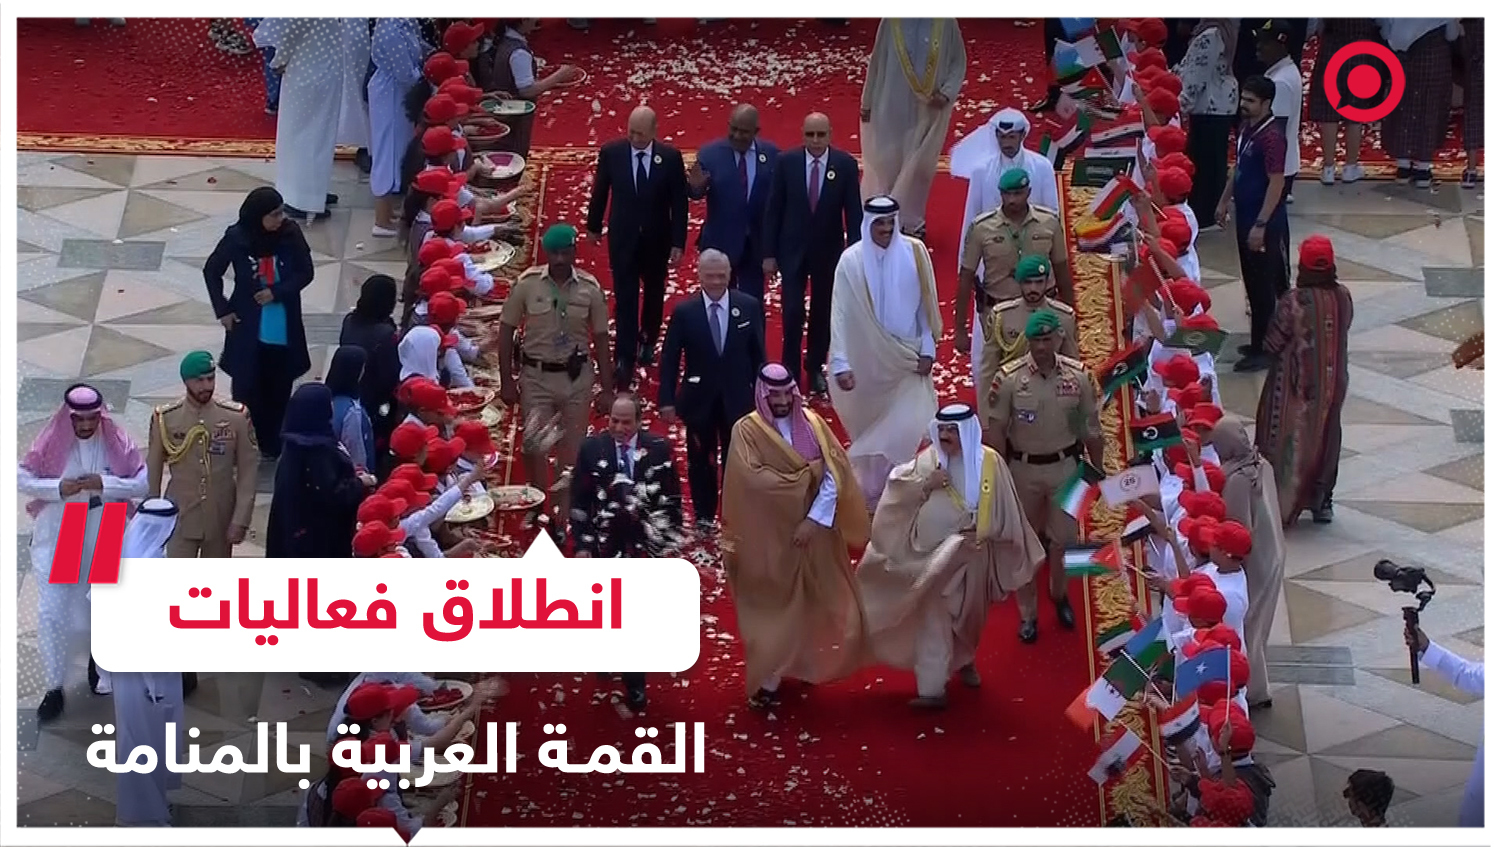 مشاهد من انطلاق فعاليات القمة العربية الـ33 في العاصمة البحرينية المنامة